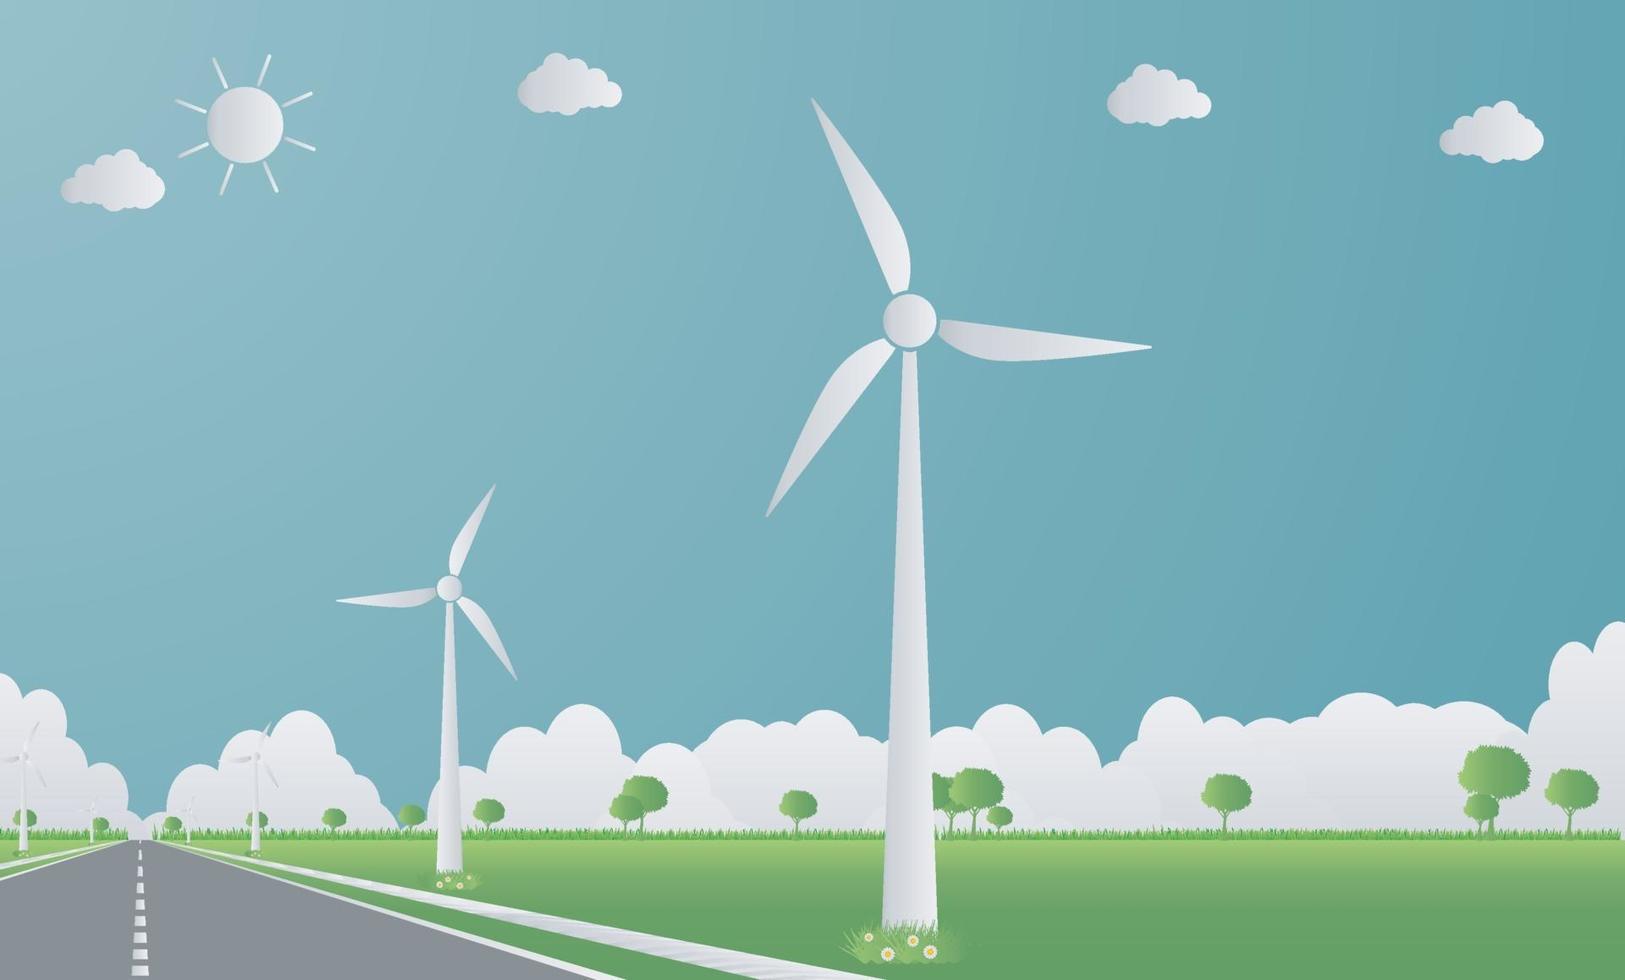 ecologia de fábrica, ícone da indústria, turbinas eólicas com árvores e energia limpa do sol com ideias de conceito ecológico para estradas. vetor